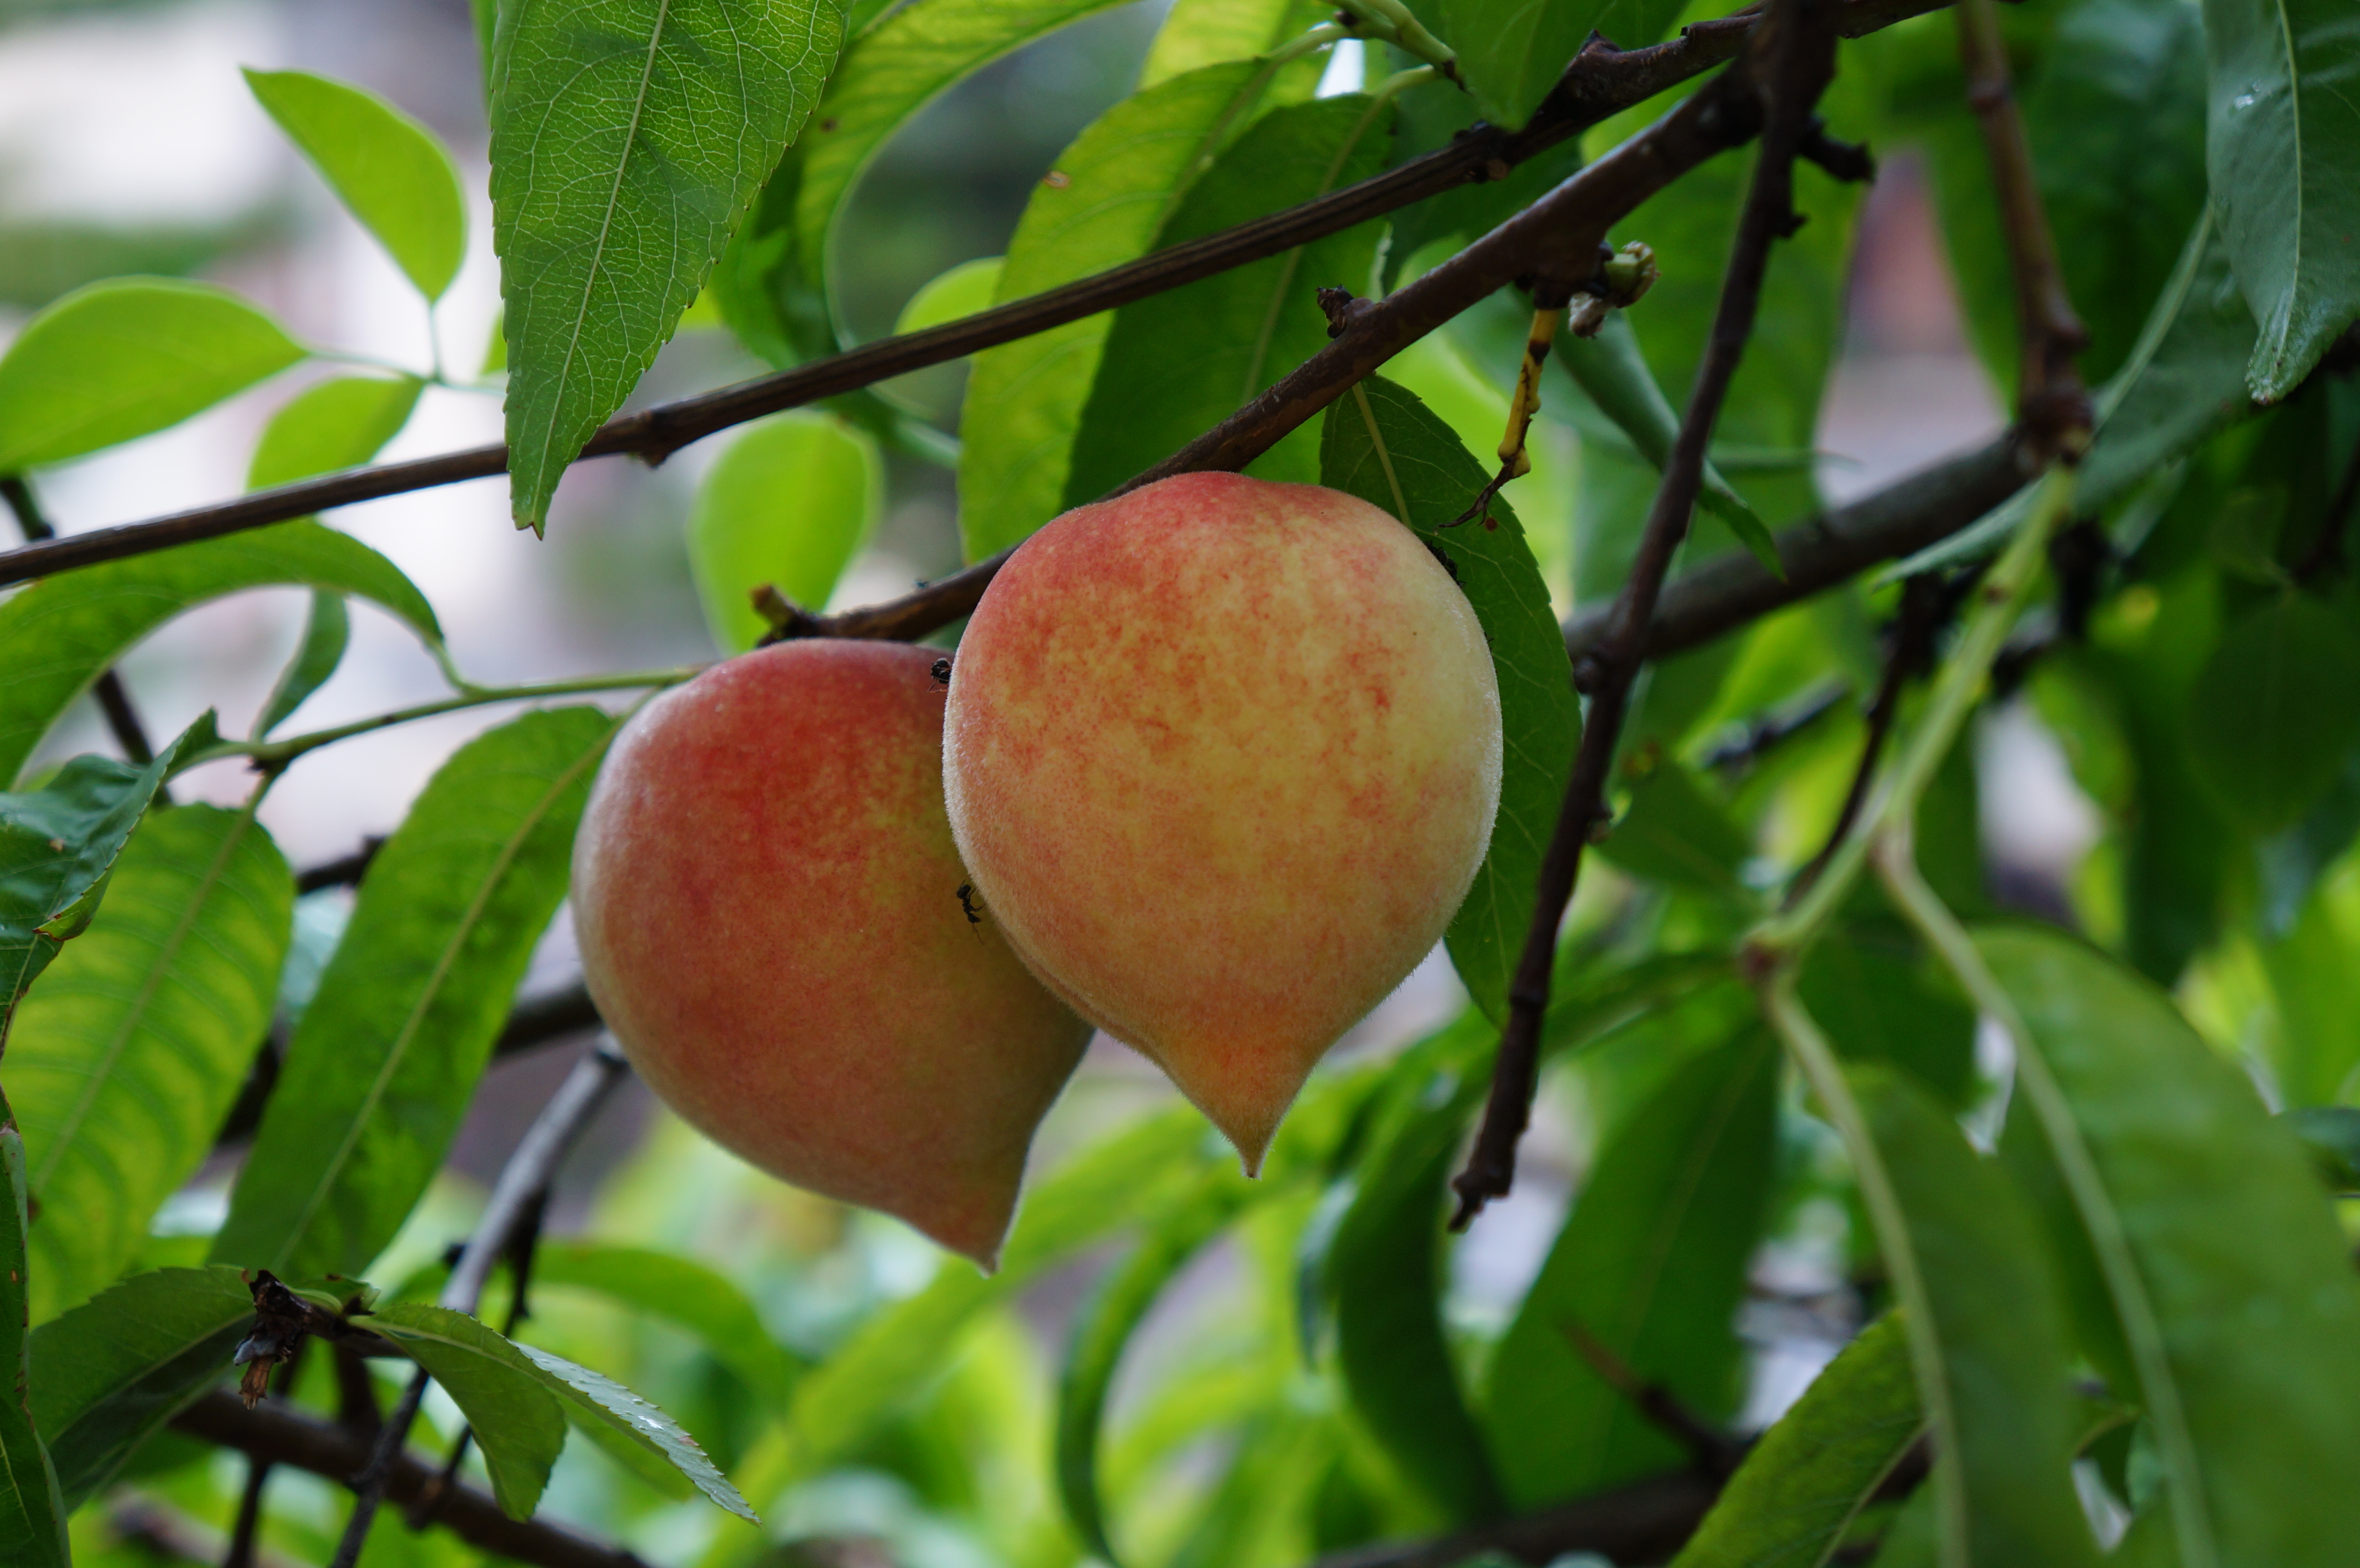 团山的一路上看到几乎家家户户都种着石榴和桃树,这里的桃子是鹰嘴桃